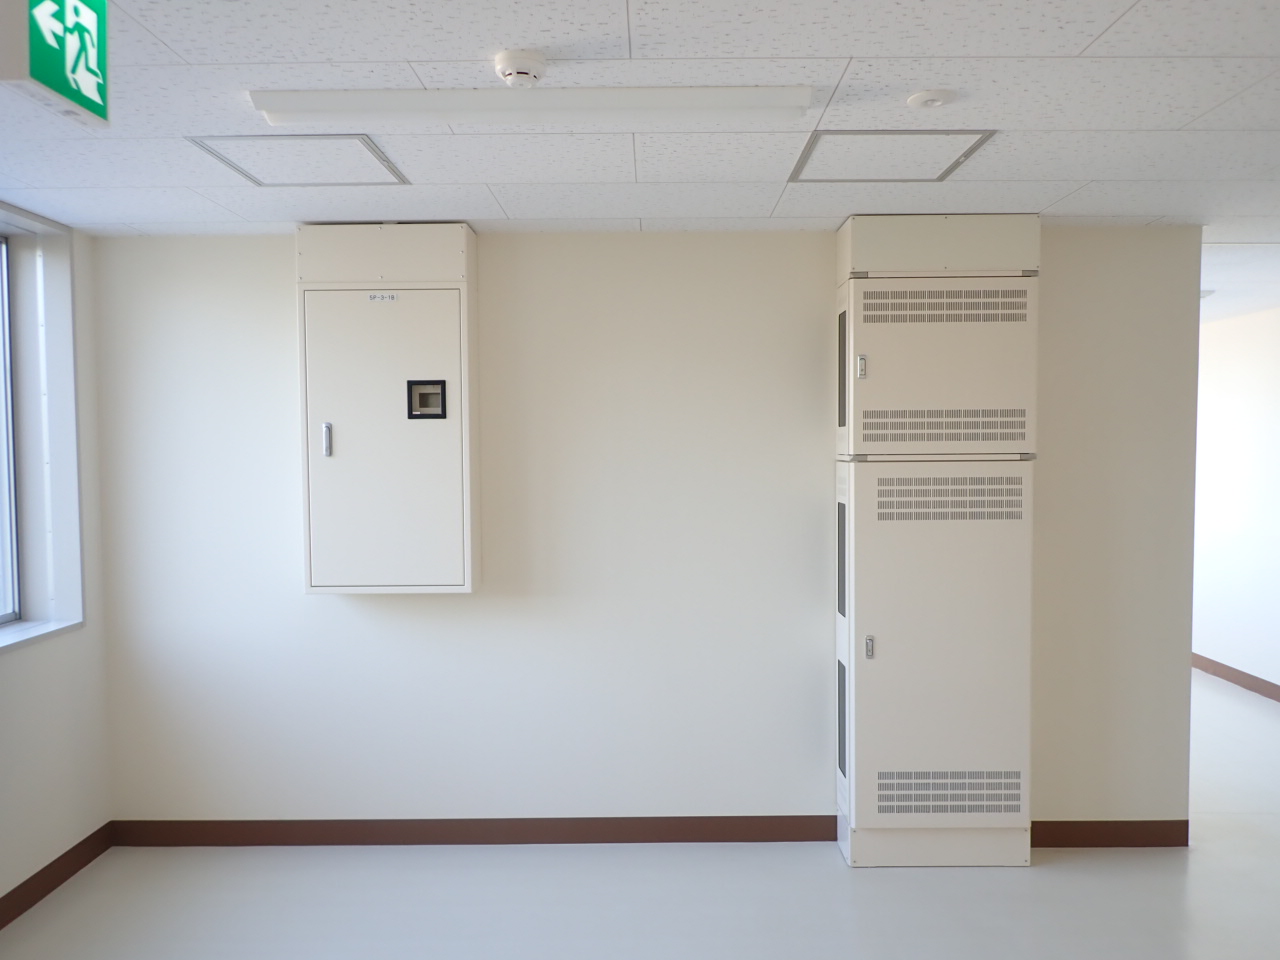 新潟大学(五十嵐)教育学系B棟改修電気設備工事